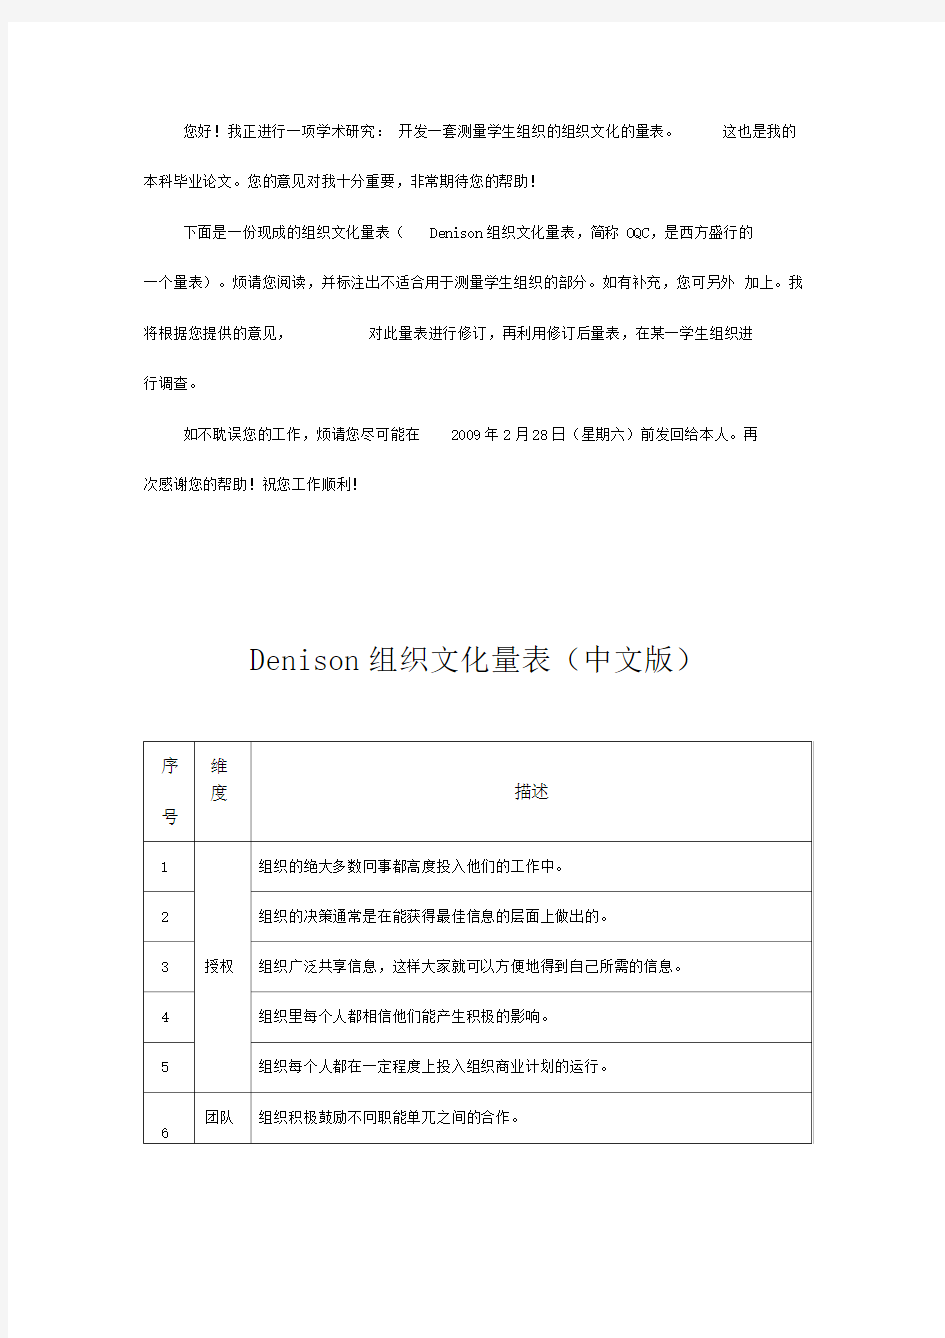 Denison企业文化量表(中文版)